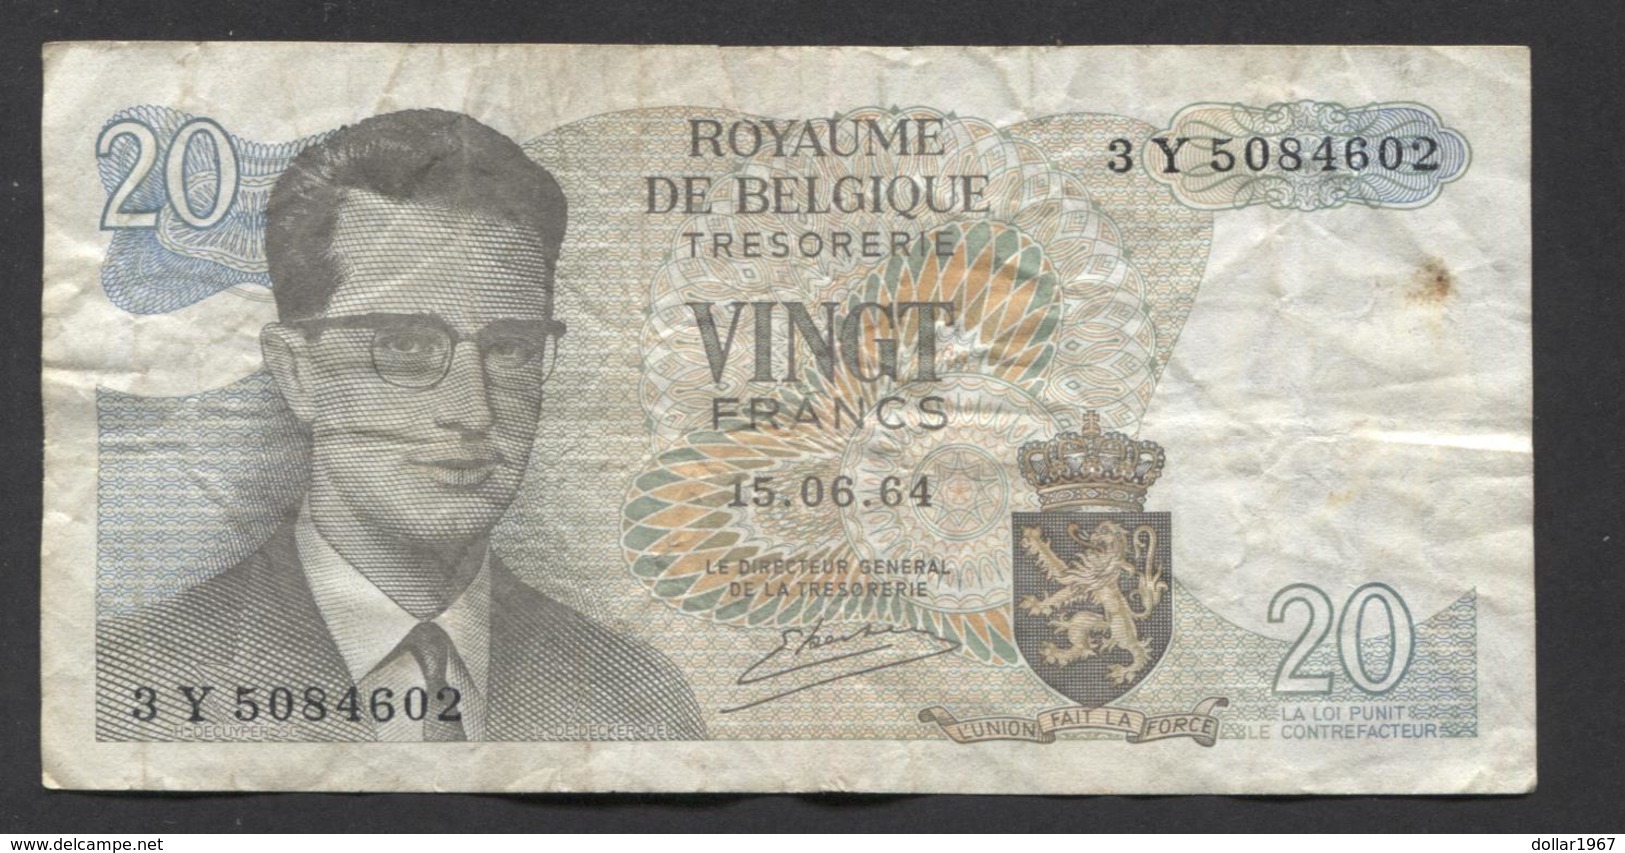 België Belgique Belgium 15 06 1964 -  20 Francs Atomium Baudouin. 3 Y  5084602 - 20 Franchi